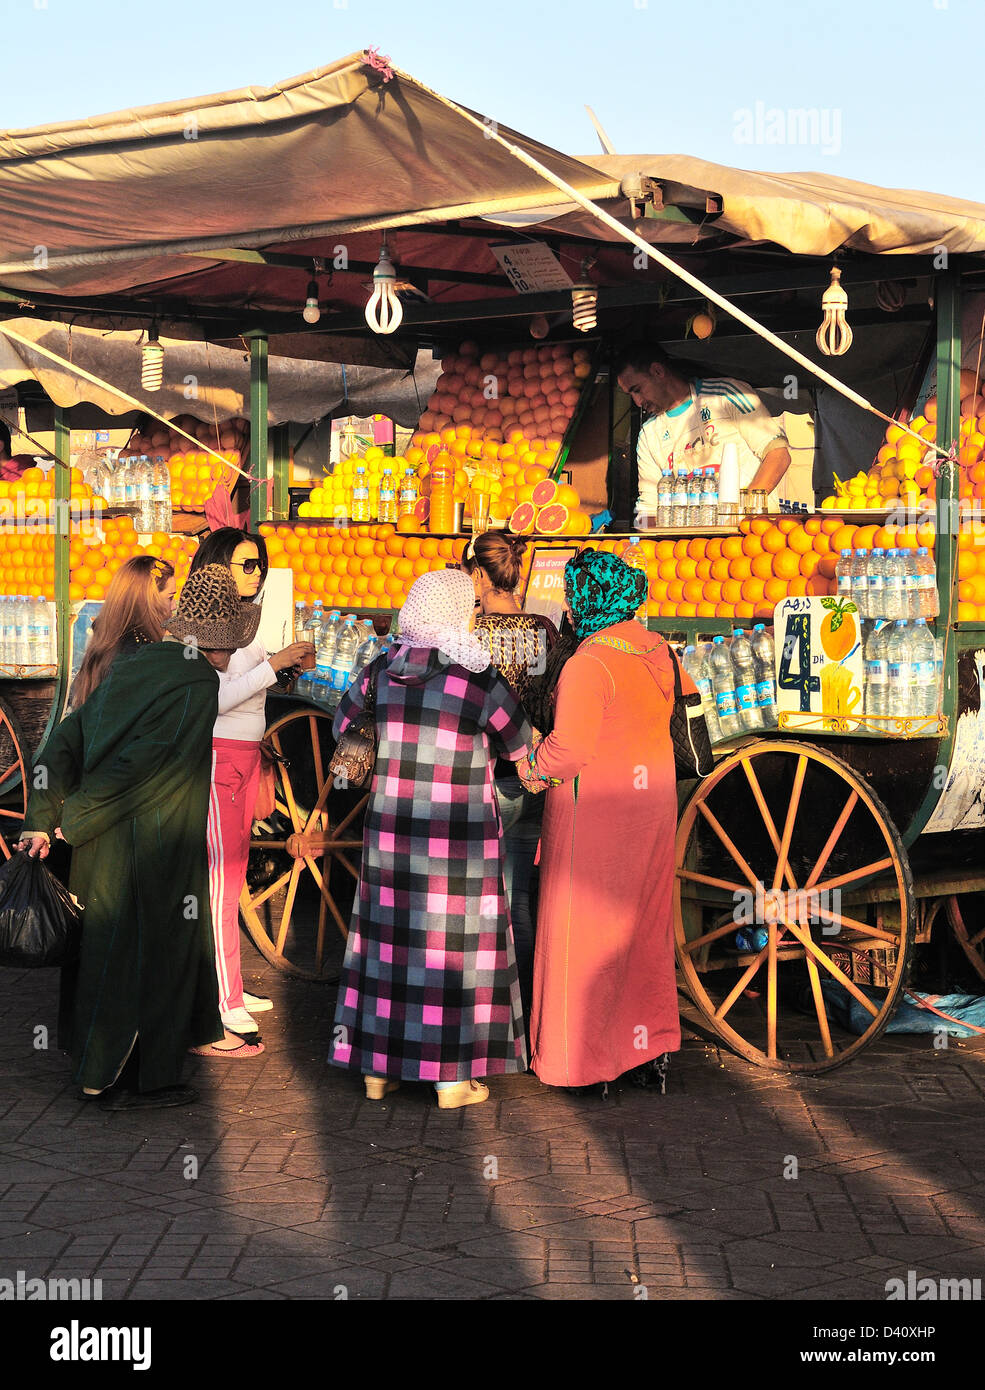 La gente del posto nella parte anteriore di un succo di arancia venditore in Piazza Jemaa El Fna a Marrakech (Marrakech), Marocco Foto Stock